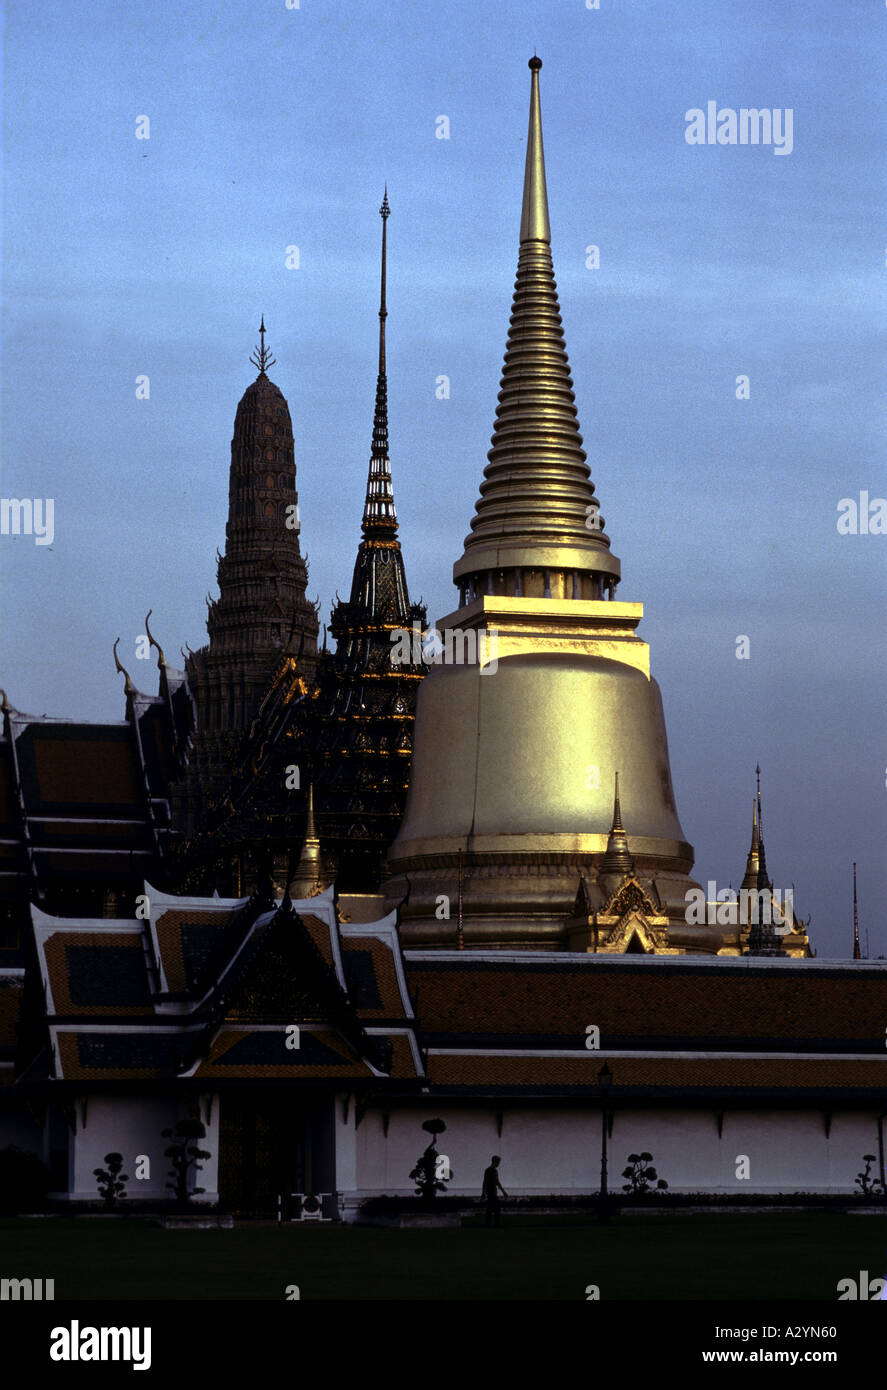 Temple du Bouddha d'Émeraude (Wat Phra Kaew) : temple Bouddhiste le plus sacré de Thaïlande, située dans le Grand Palace. Banque D'Images